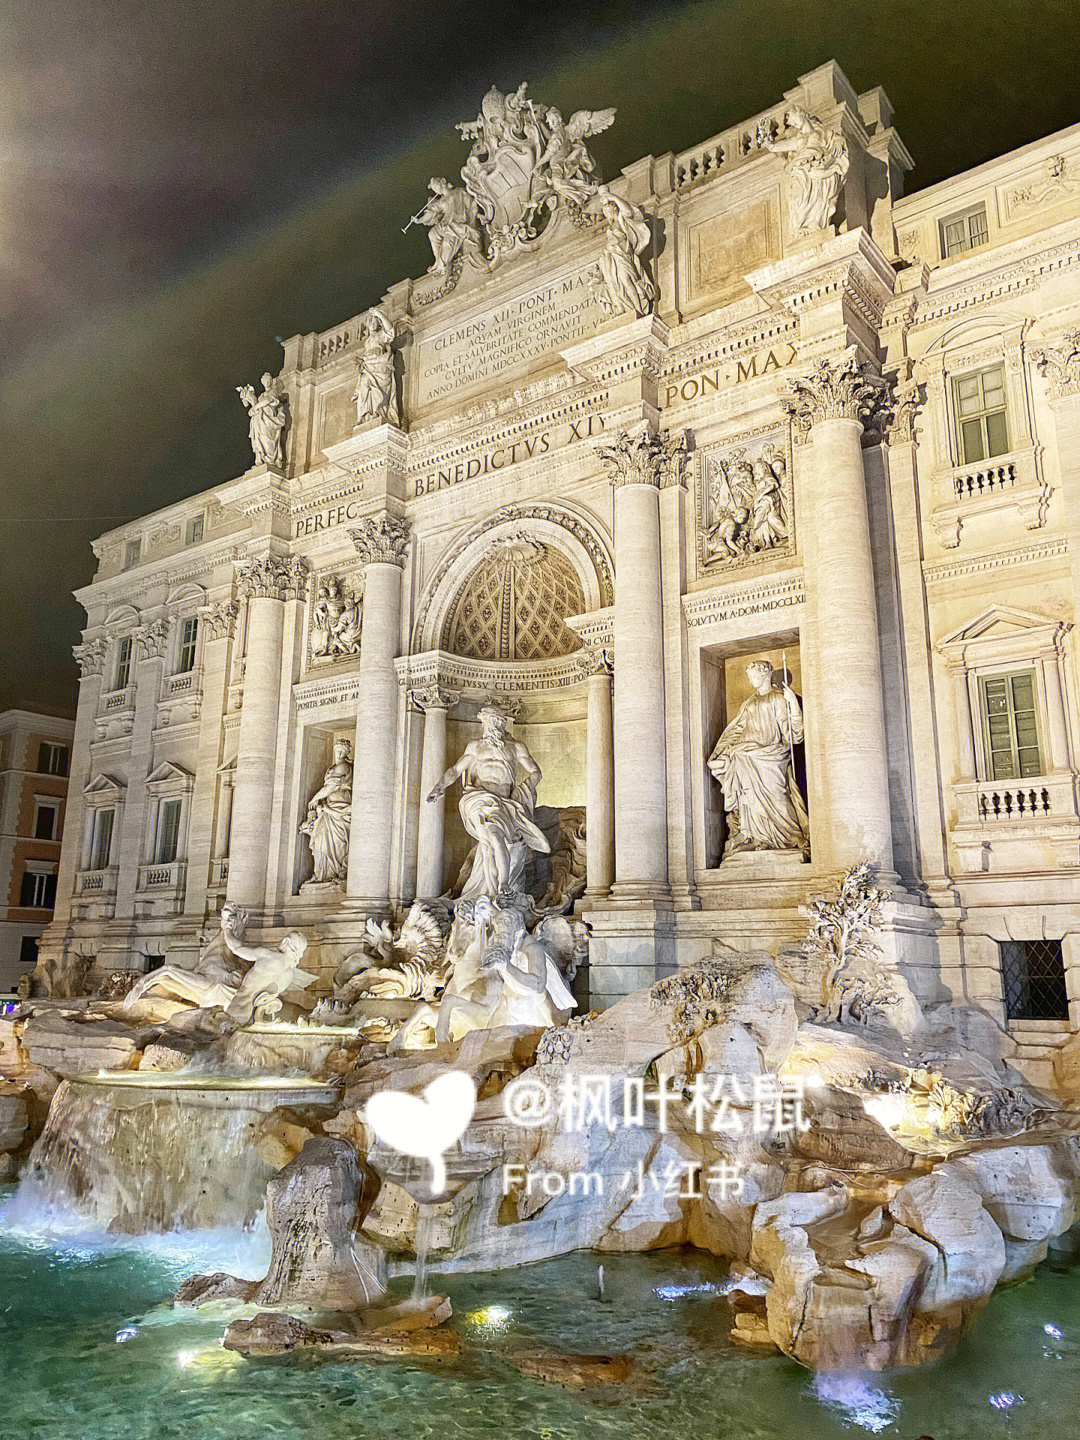 上次去罗马时,刚好trevi fountain维修中,没能看到它的美是那次旅途的